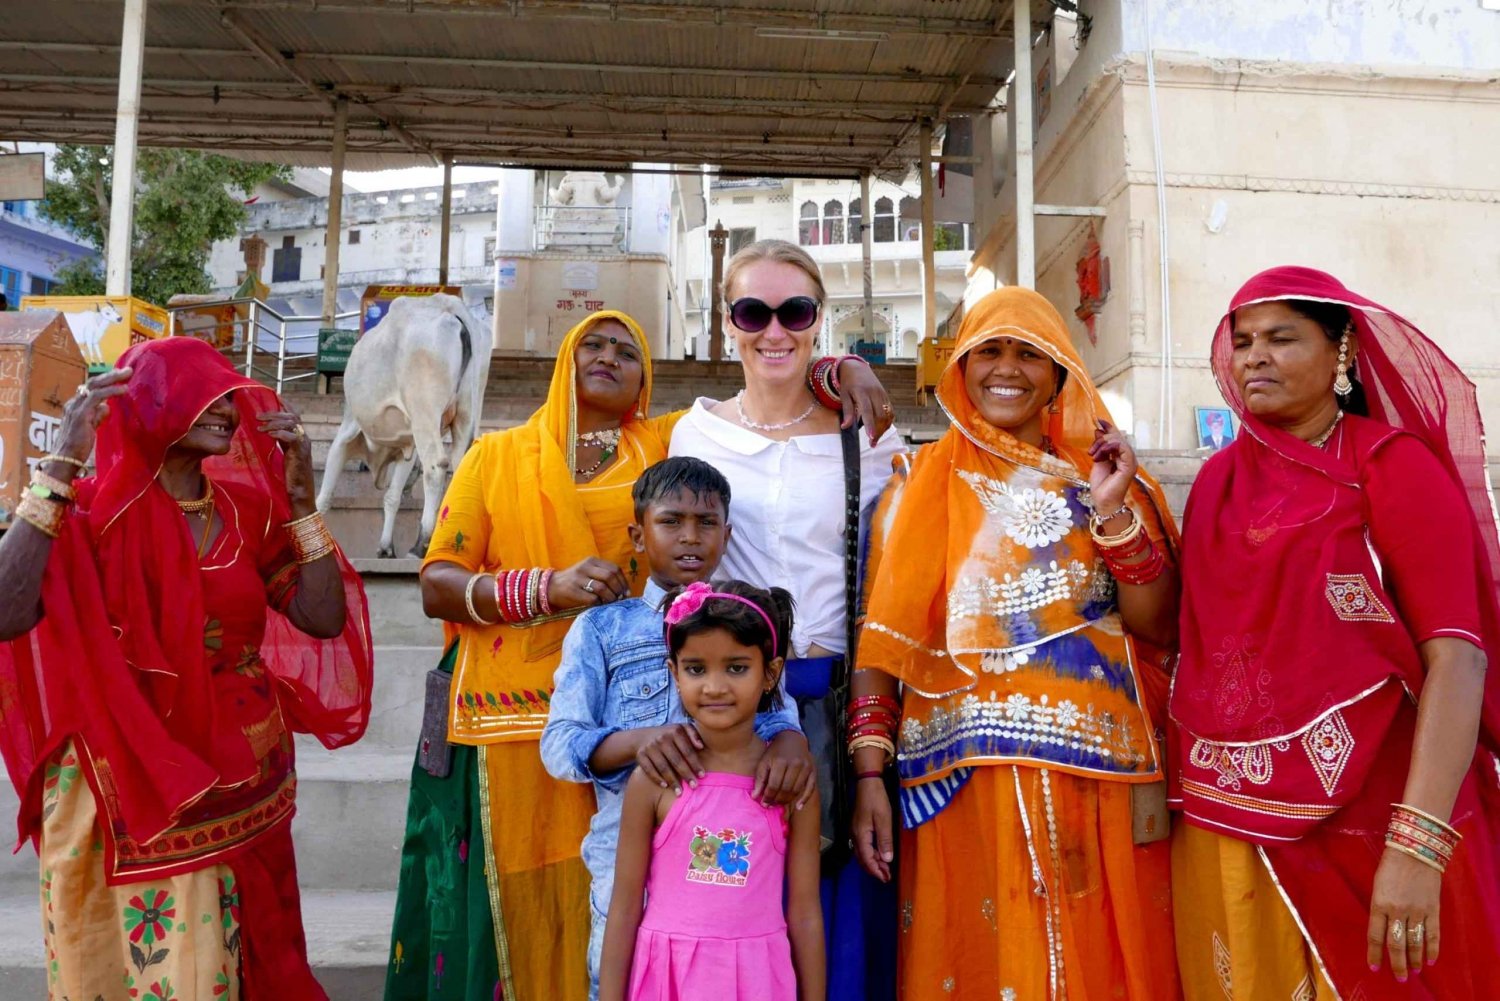 Jaipurista: Pushkar Self-Guided päiväretki